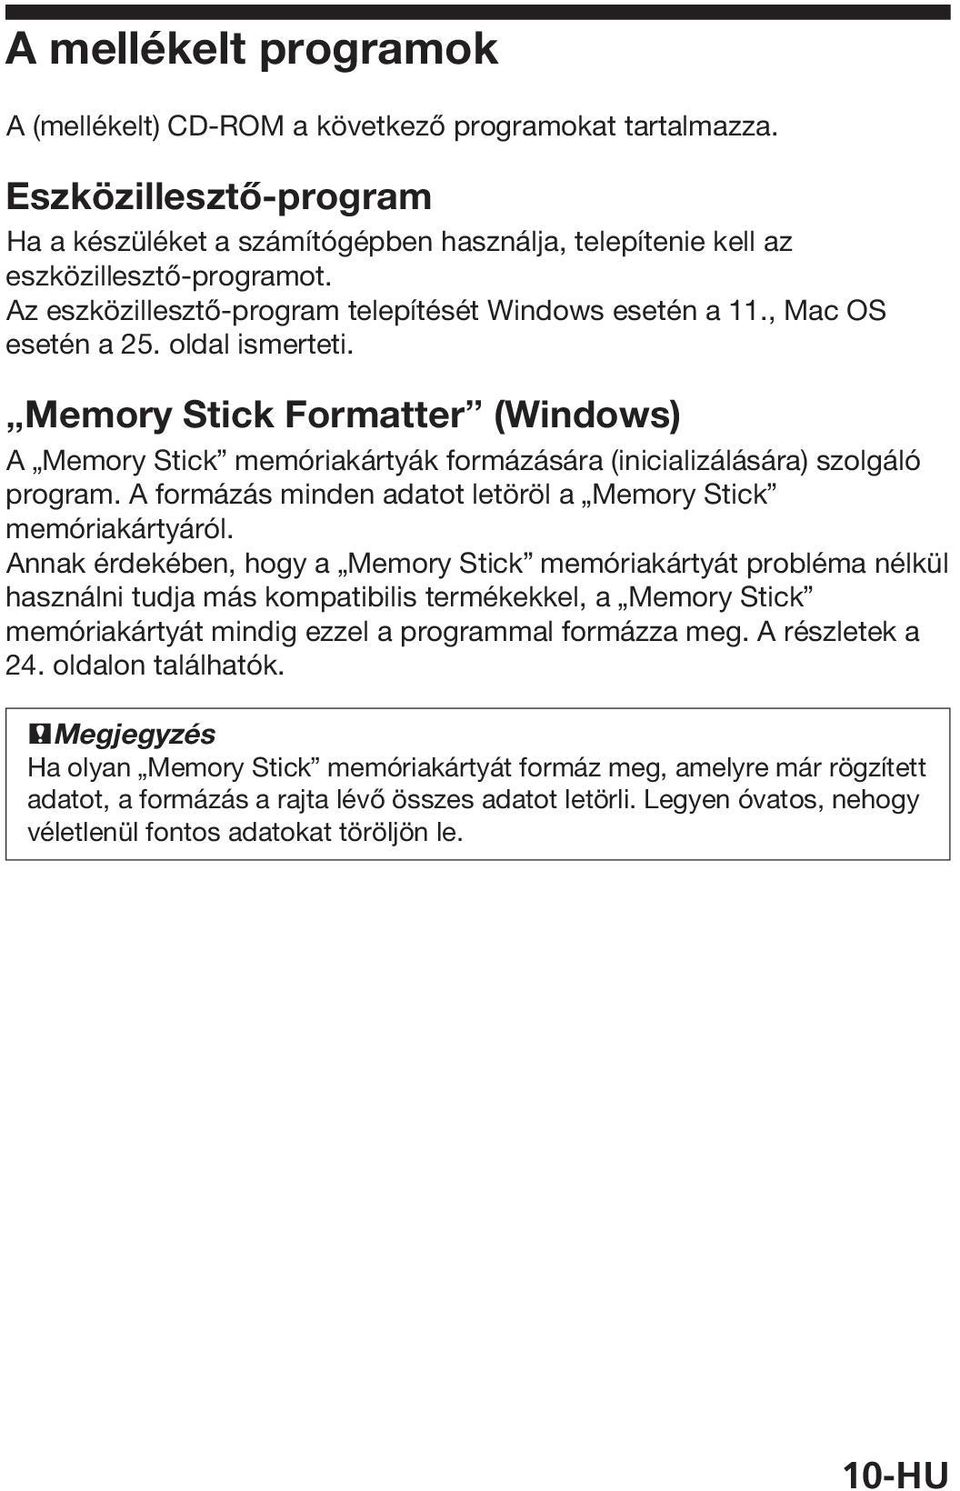 Memory Stick Formatter (Windows) A Memory Stick memóriakártyák formázására (inicializálására) szolgáló program. A formázás minden adatot letöröl a Memory Stick memóriakártyáról.